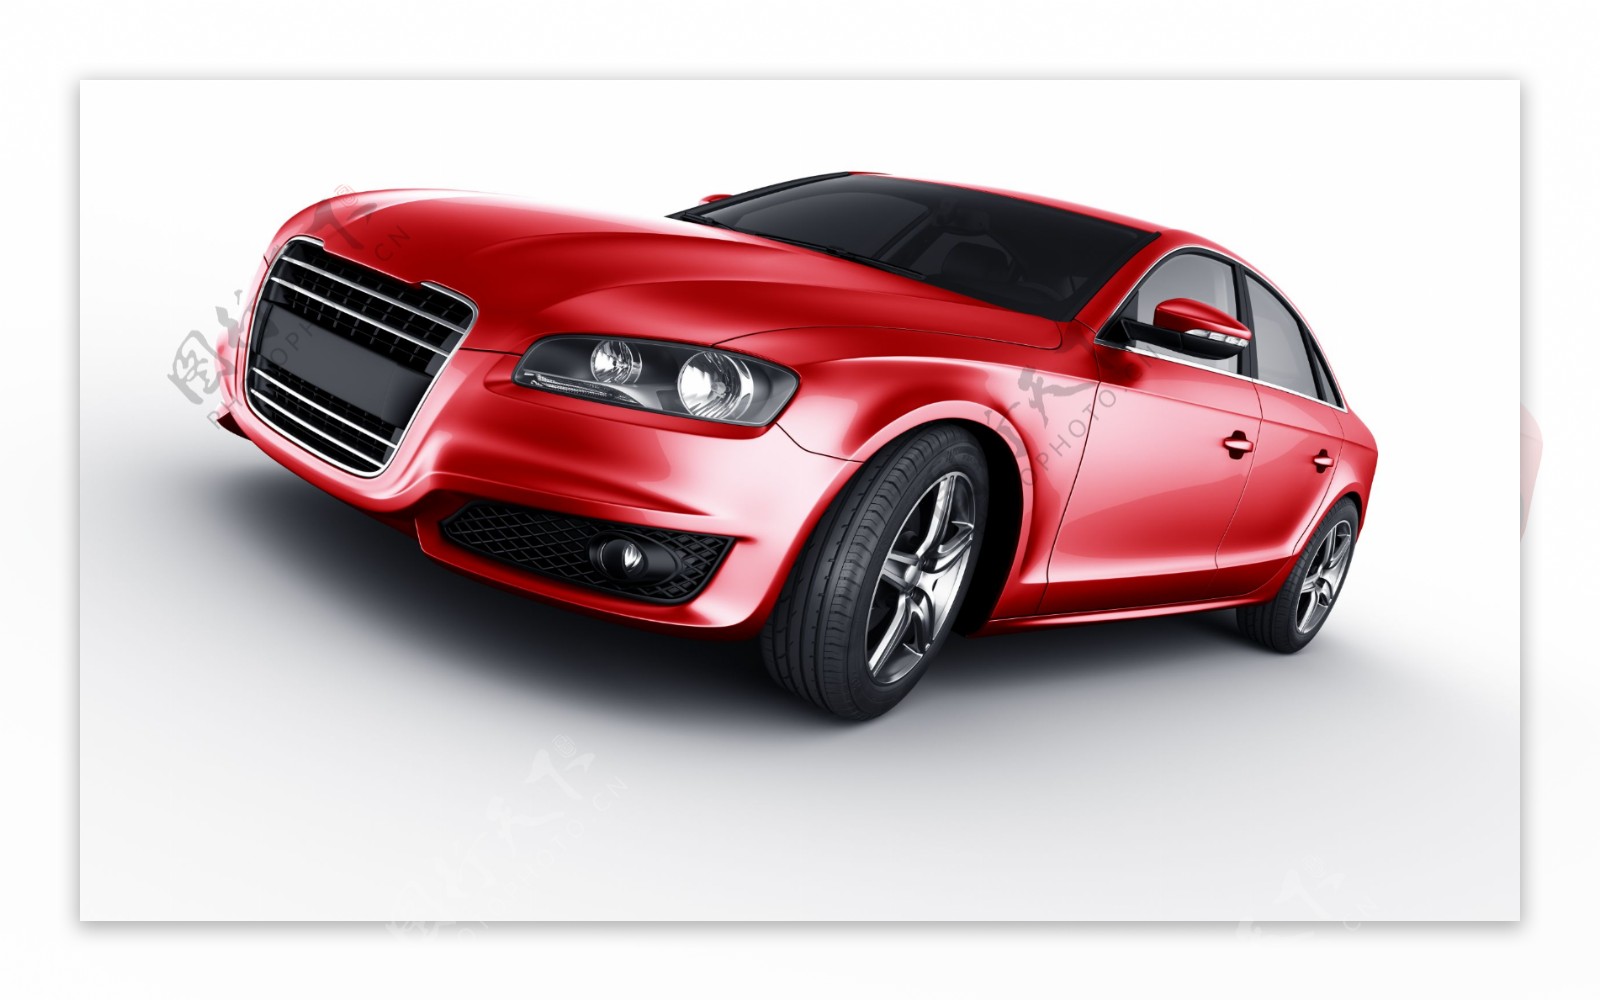 一辆红色的汽车模型图片